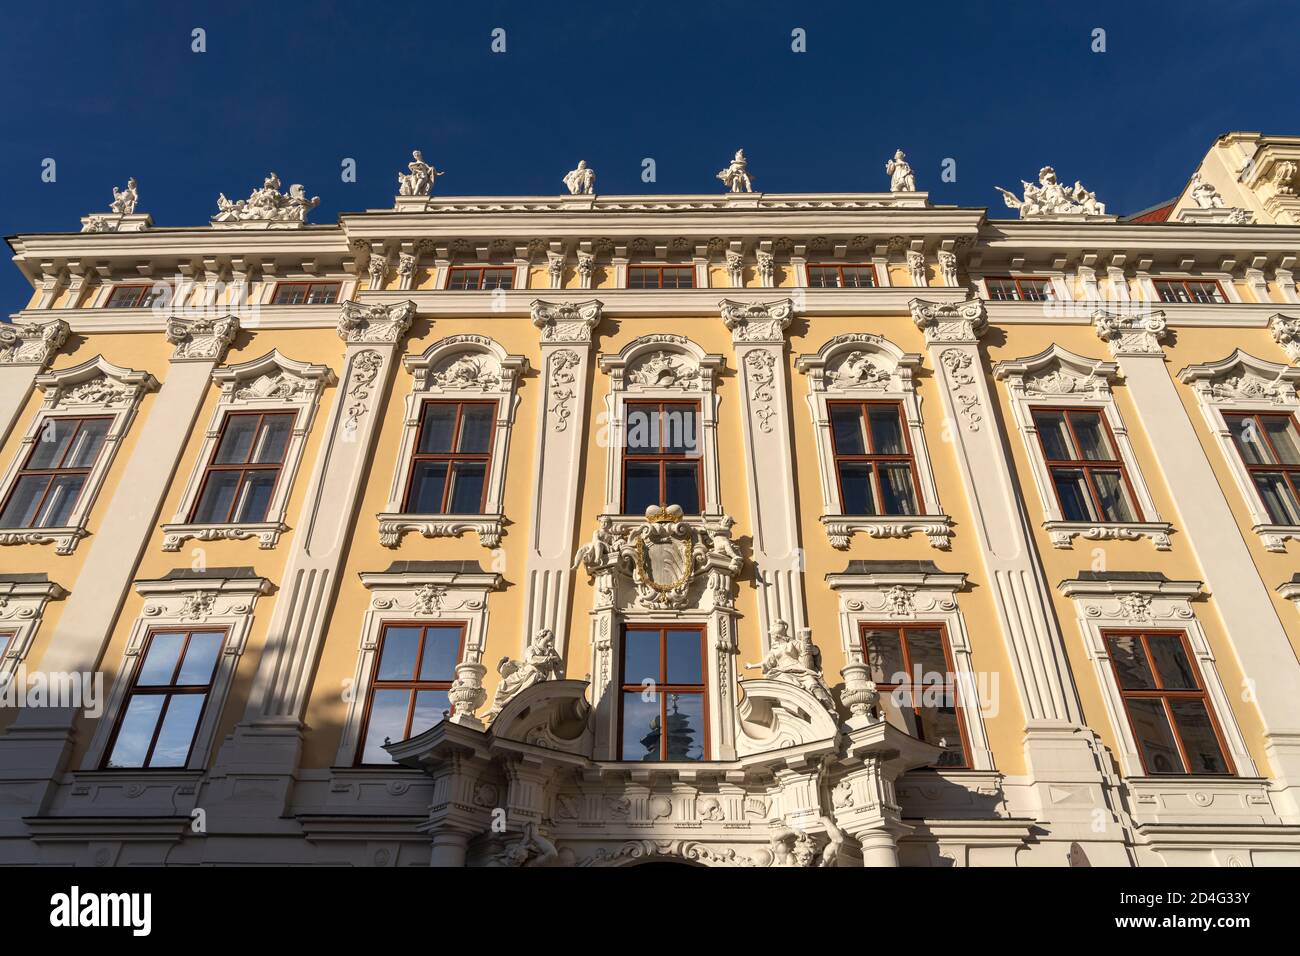 Palais Kinsky, Vienne, Österreich, Europa | Palais Kinsky, Vienne, Autriche, Europe Banque D'Images